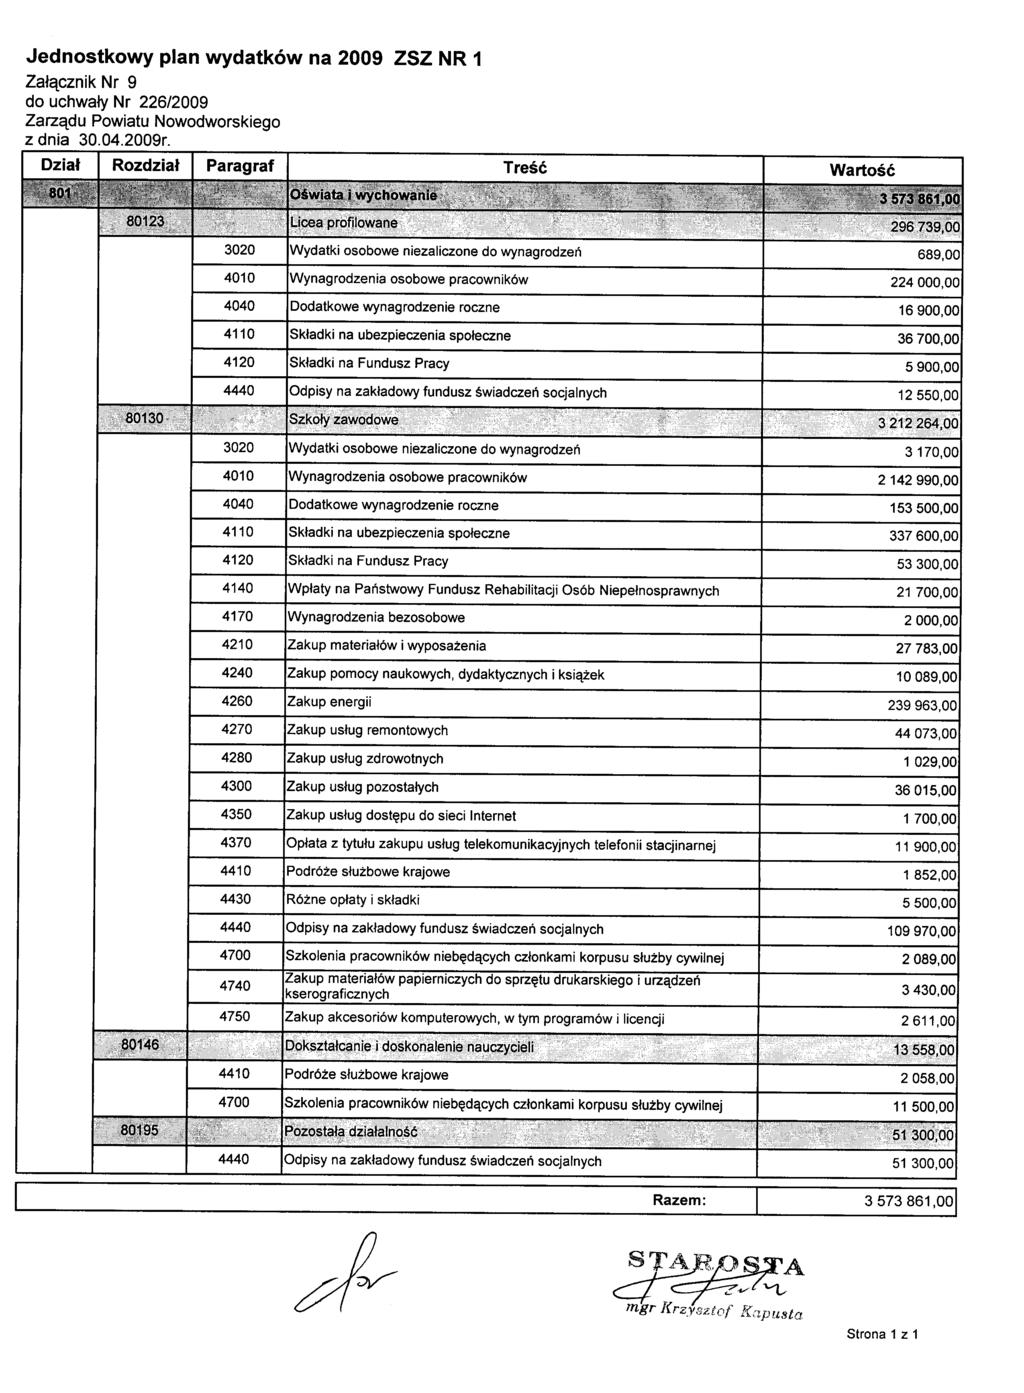 Jednostkowy plan wydatków na 2009 ZSZ NR 1 Załącznik Nr 9 do uchwały Nr 226/2009 Zarządu Powiatu Nowodworskiego z dnia 30.04.2009r.